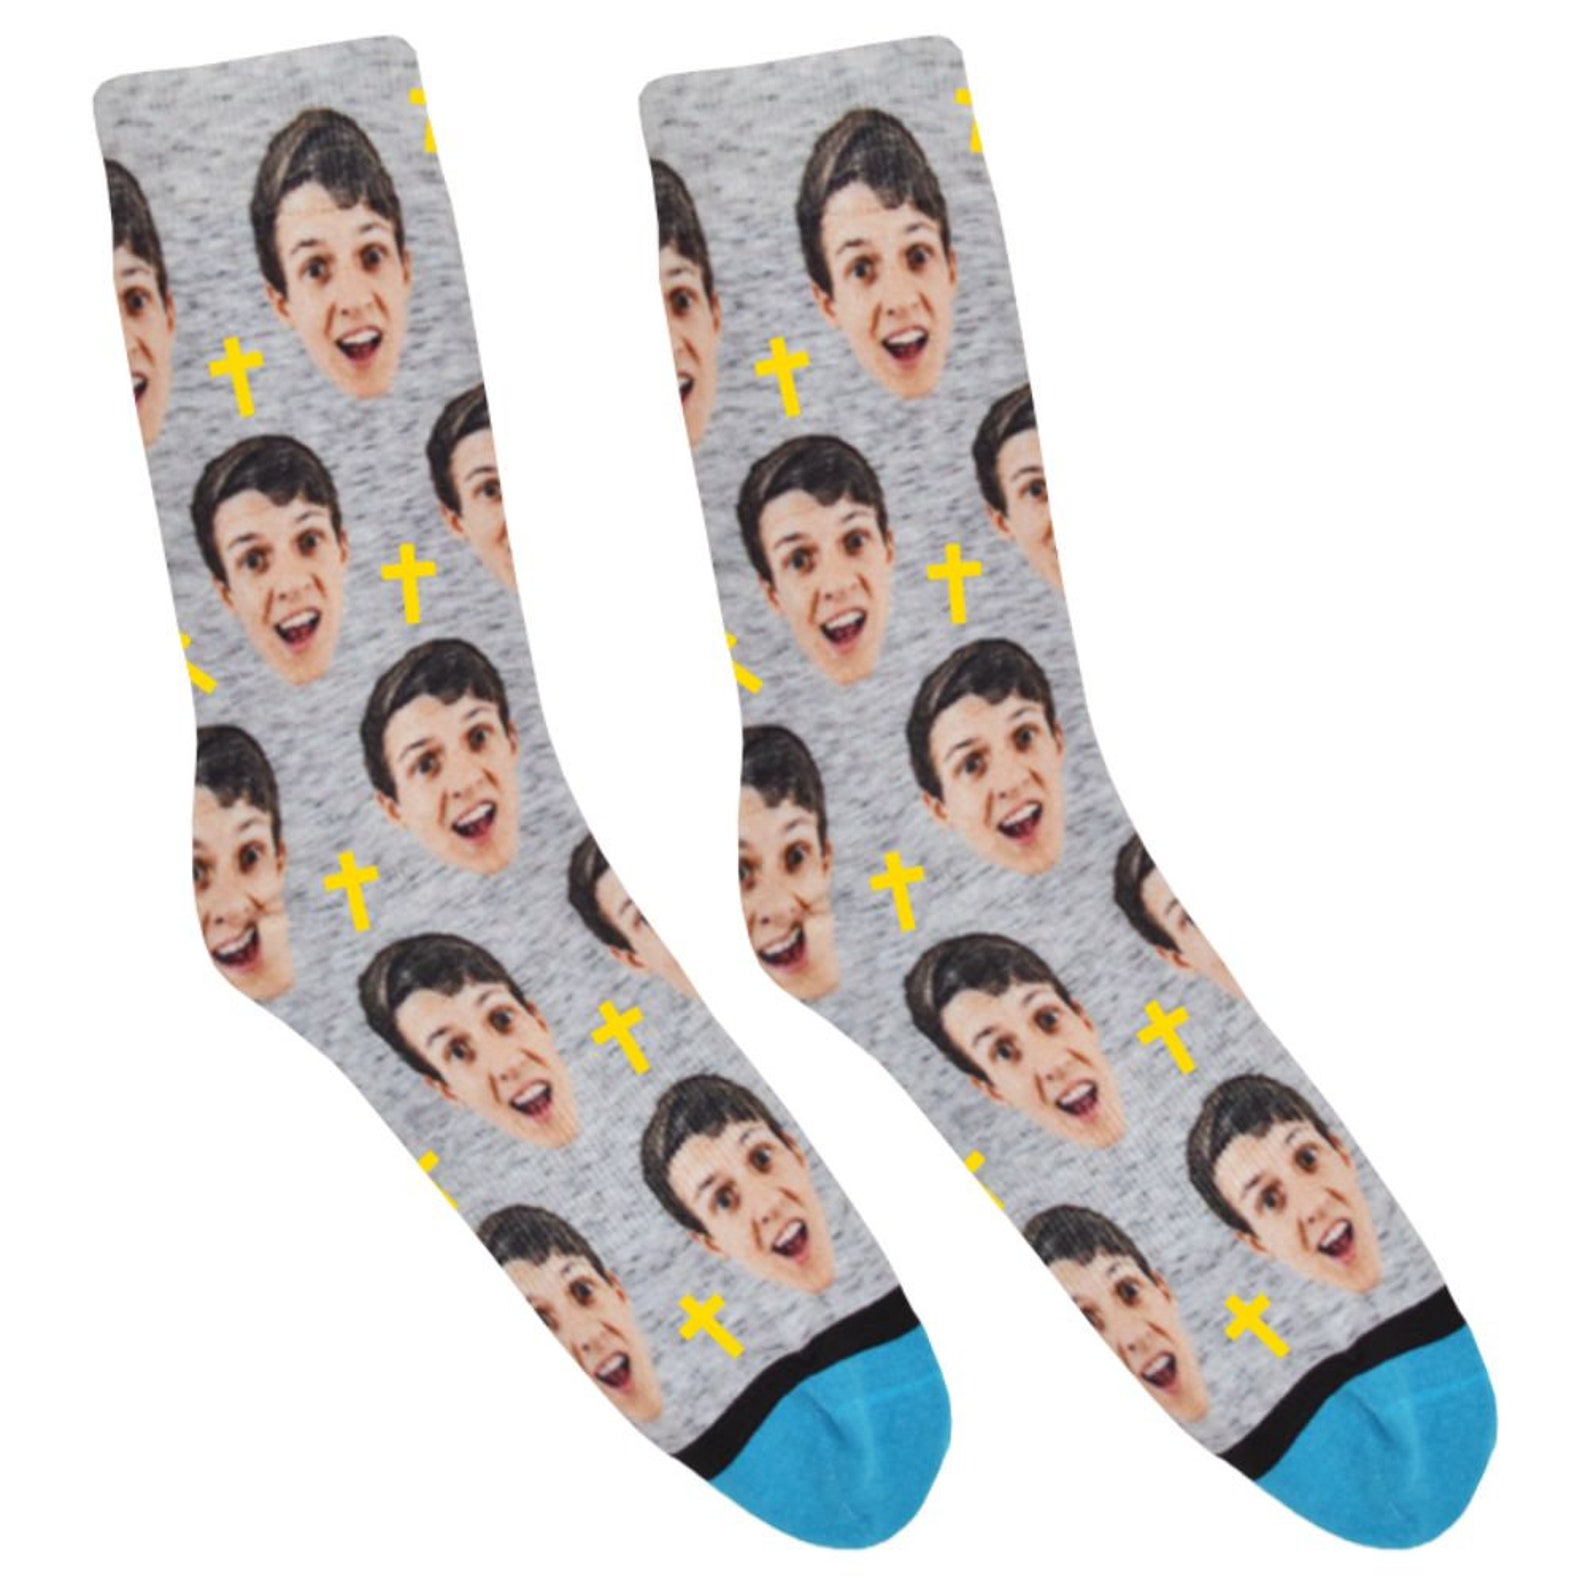 Divvyup Socks Custom Cross Socks - Etsy